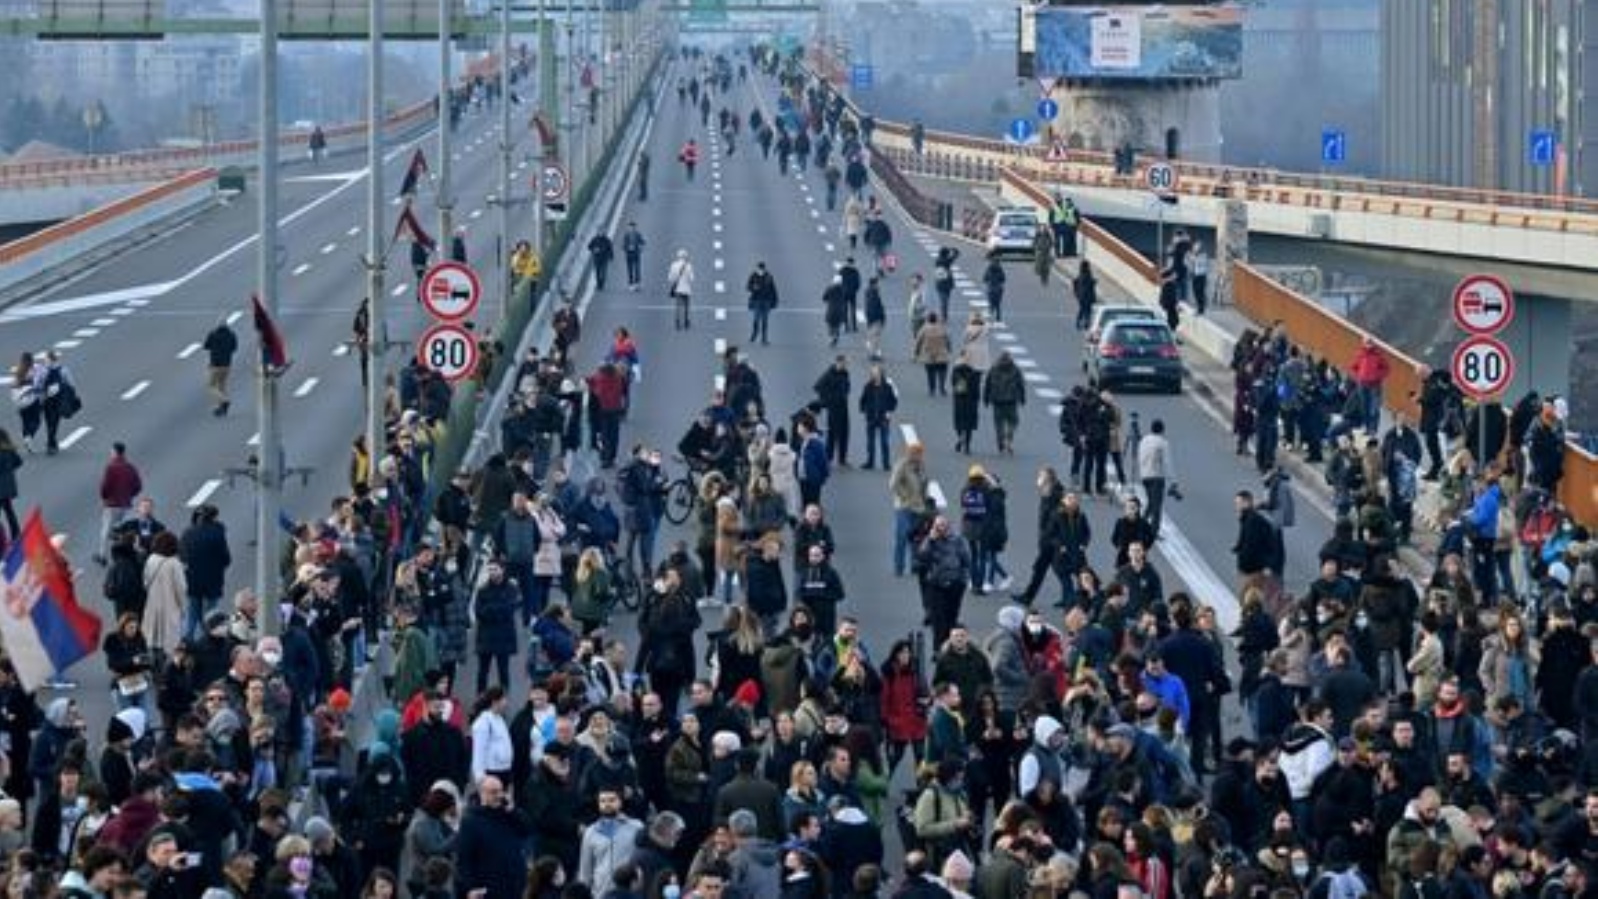 متظاهرون بيئيون يغلقون طرقاً في الكثير من المدن الصربية، احتجاجاً على مشروع لشركة التعدين الإنكليزية الأسترالية العملاقة 